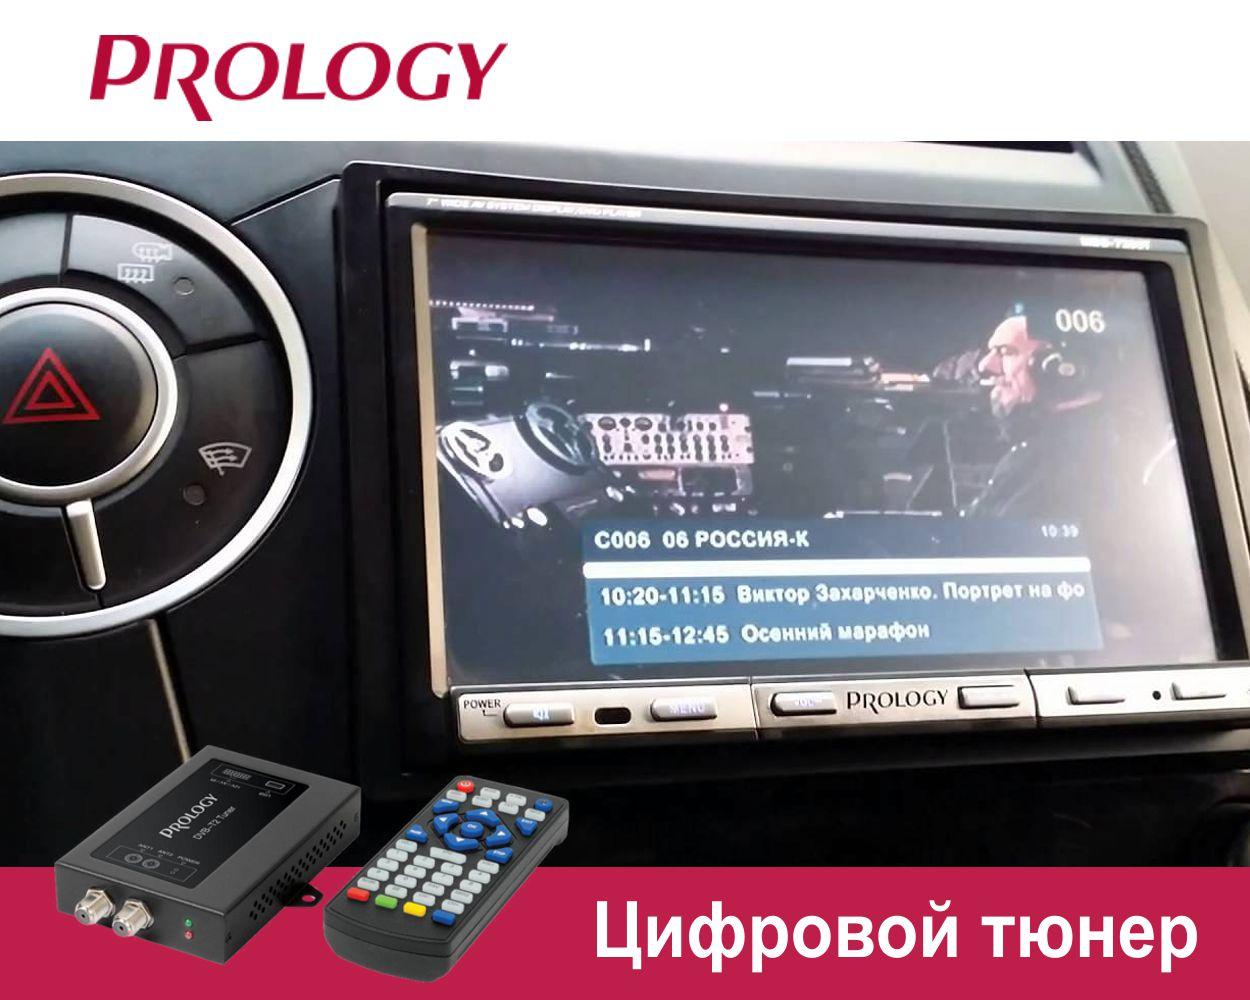 А вы смотрите новое цифровое ТВ в машине?   Рекомендуем Prology DVB-T2 Tuner.